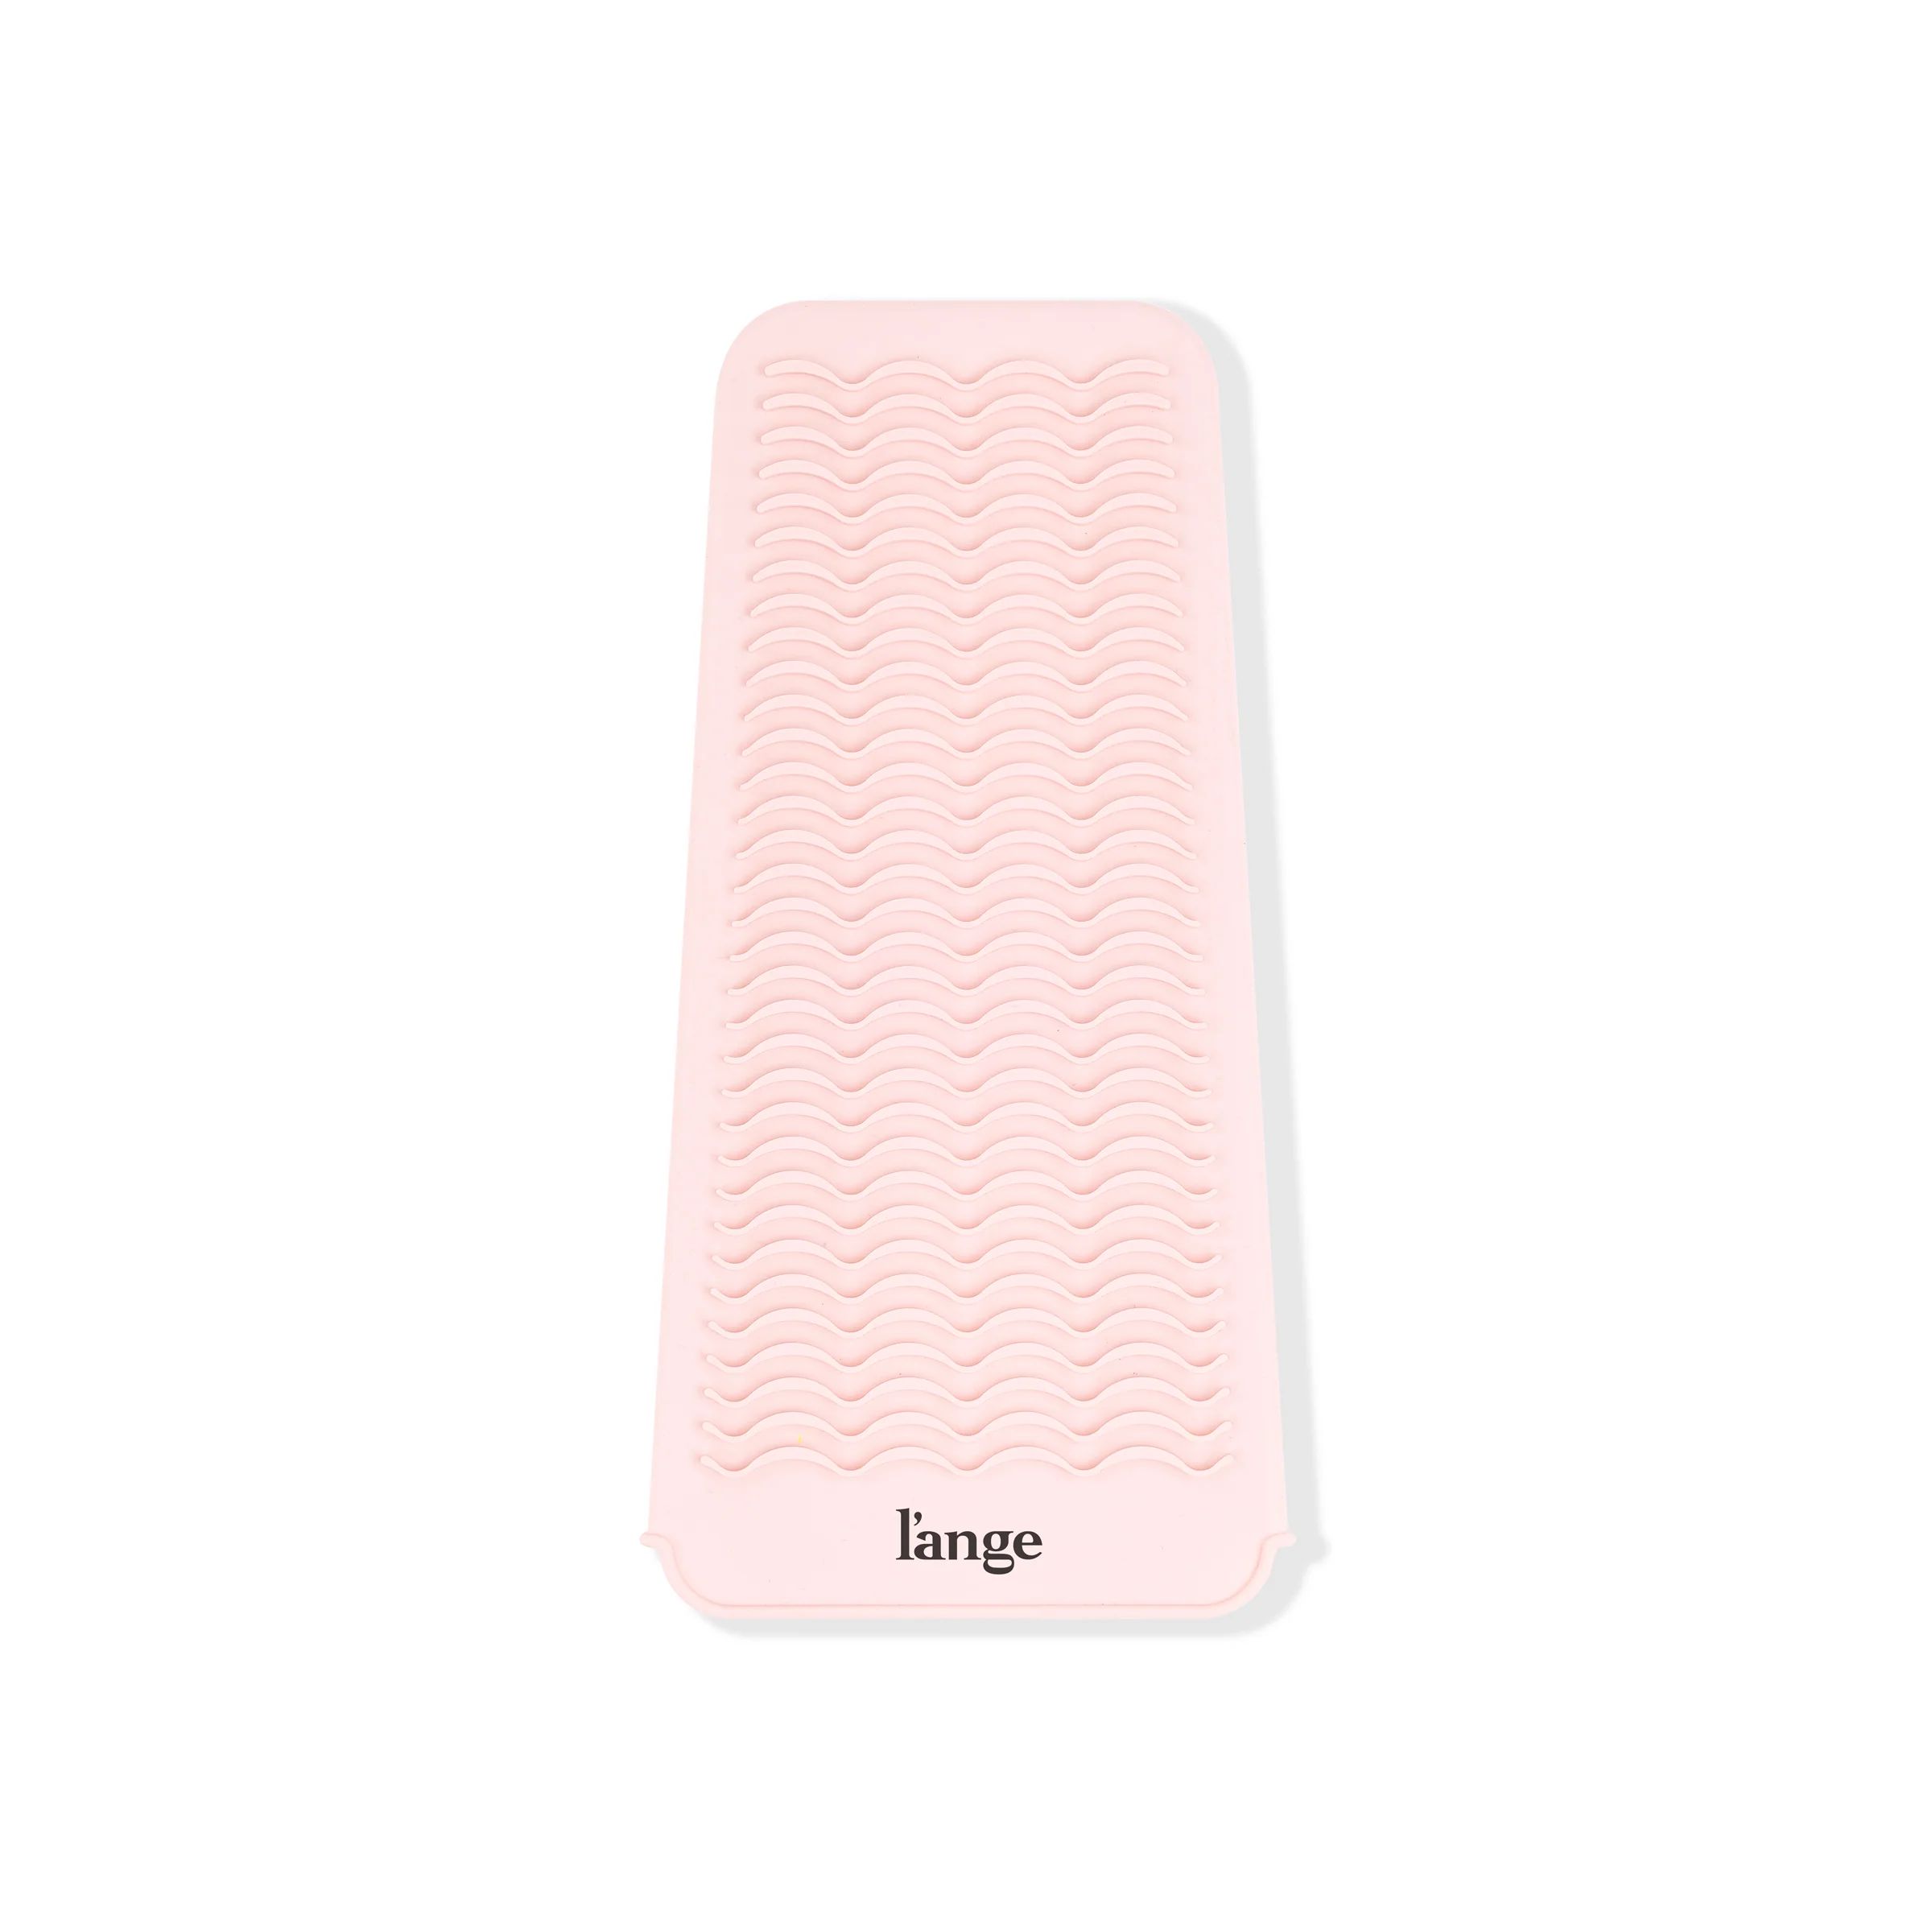 Heat-Resistant Mat | L'ange Hair